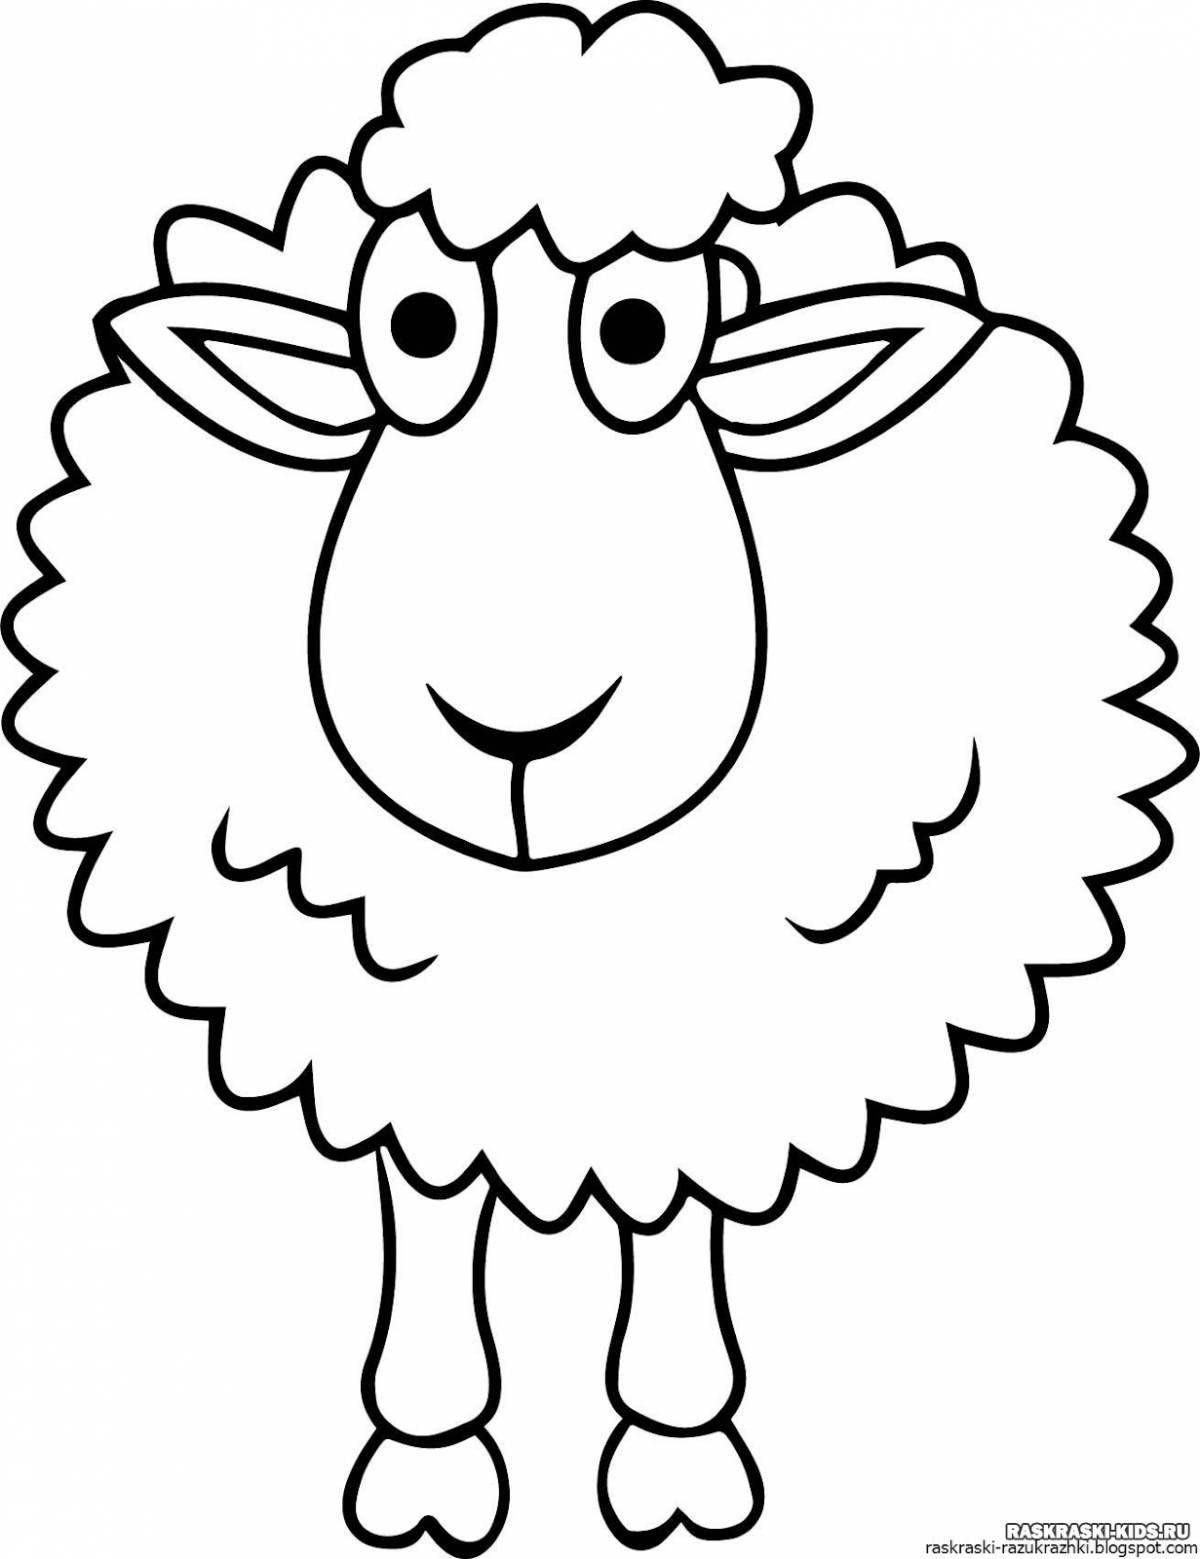 Яркая раскраска овечка для детей 3-4 лет